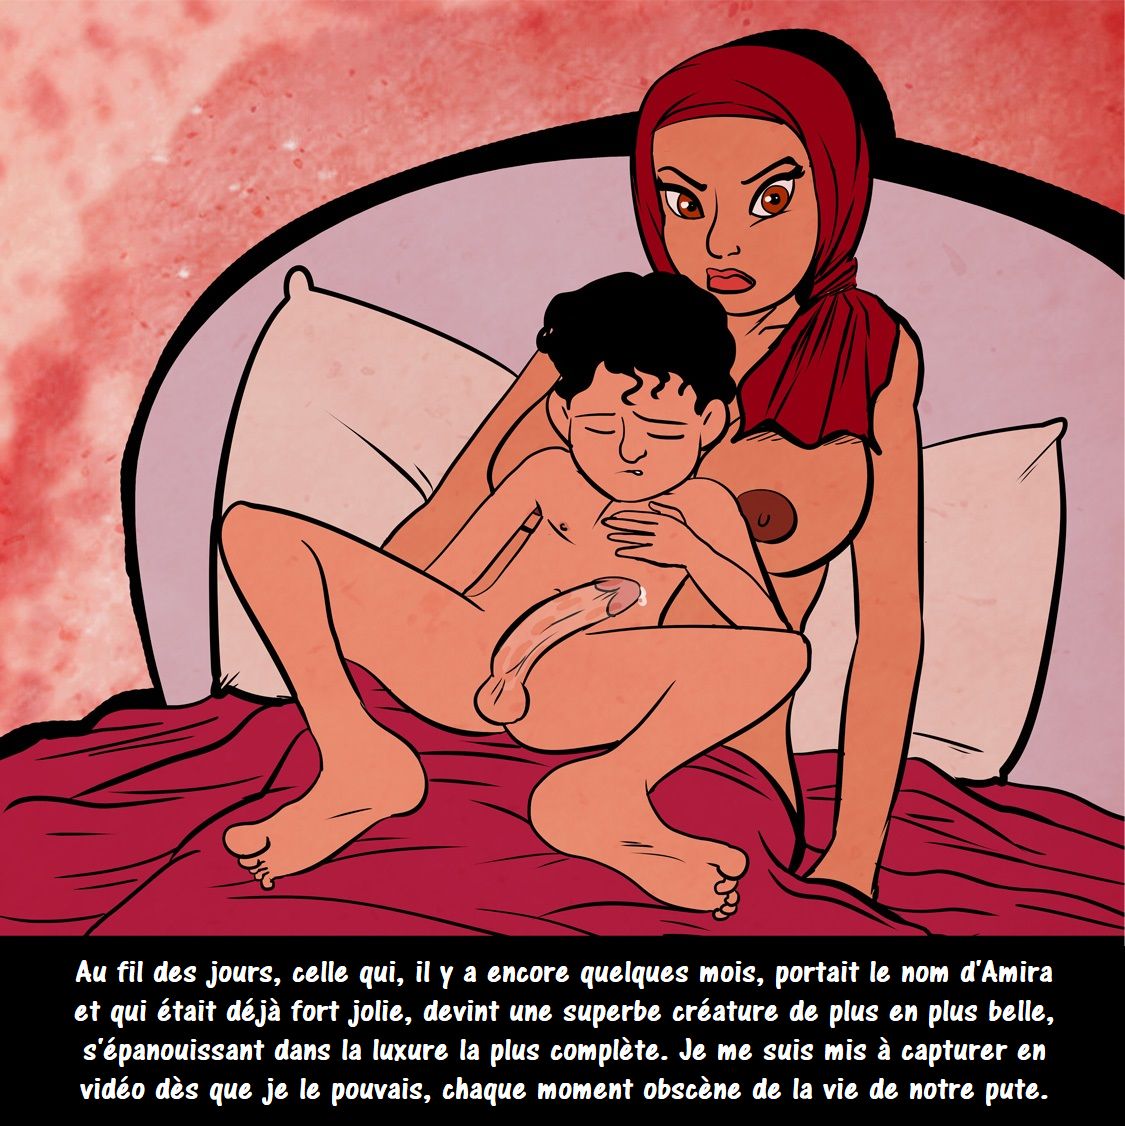 Histoire dune épouse, mère et esclave sexuelle dans le monde arabe. numero d'image 31